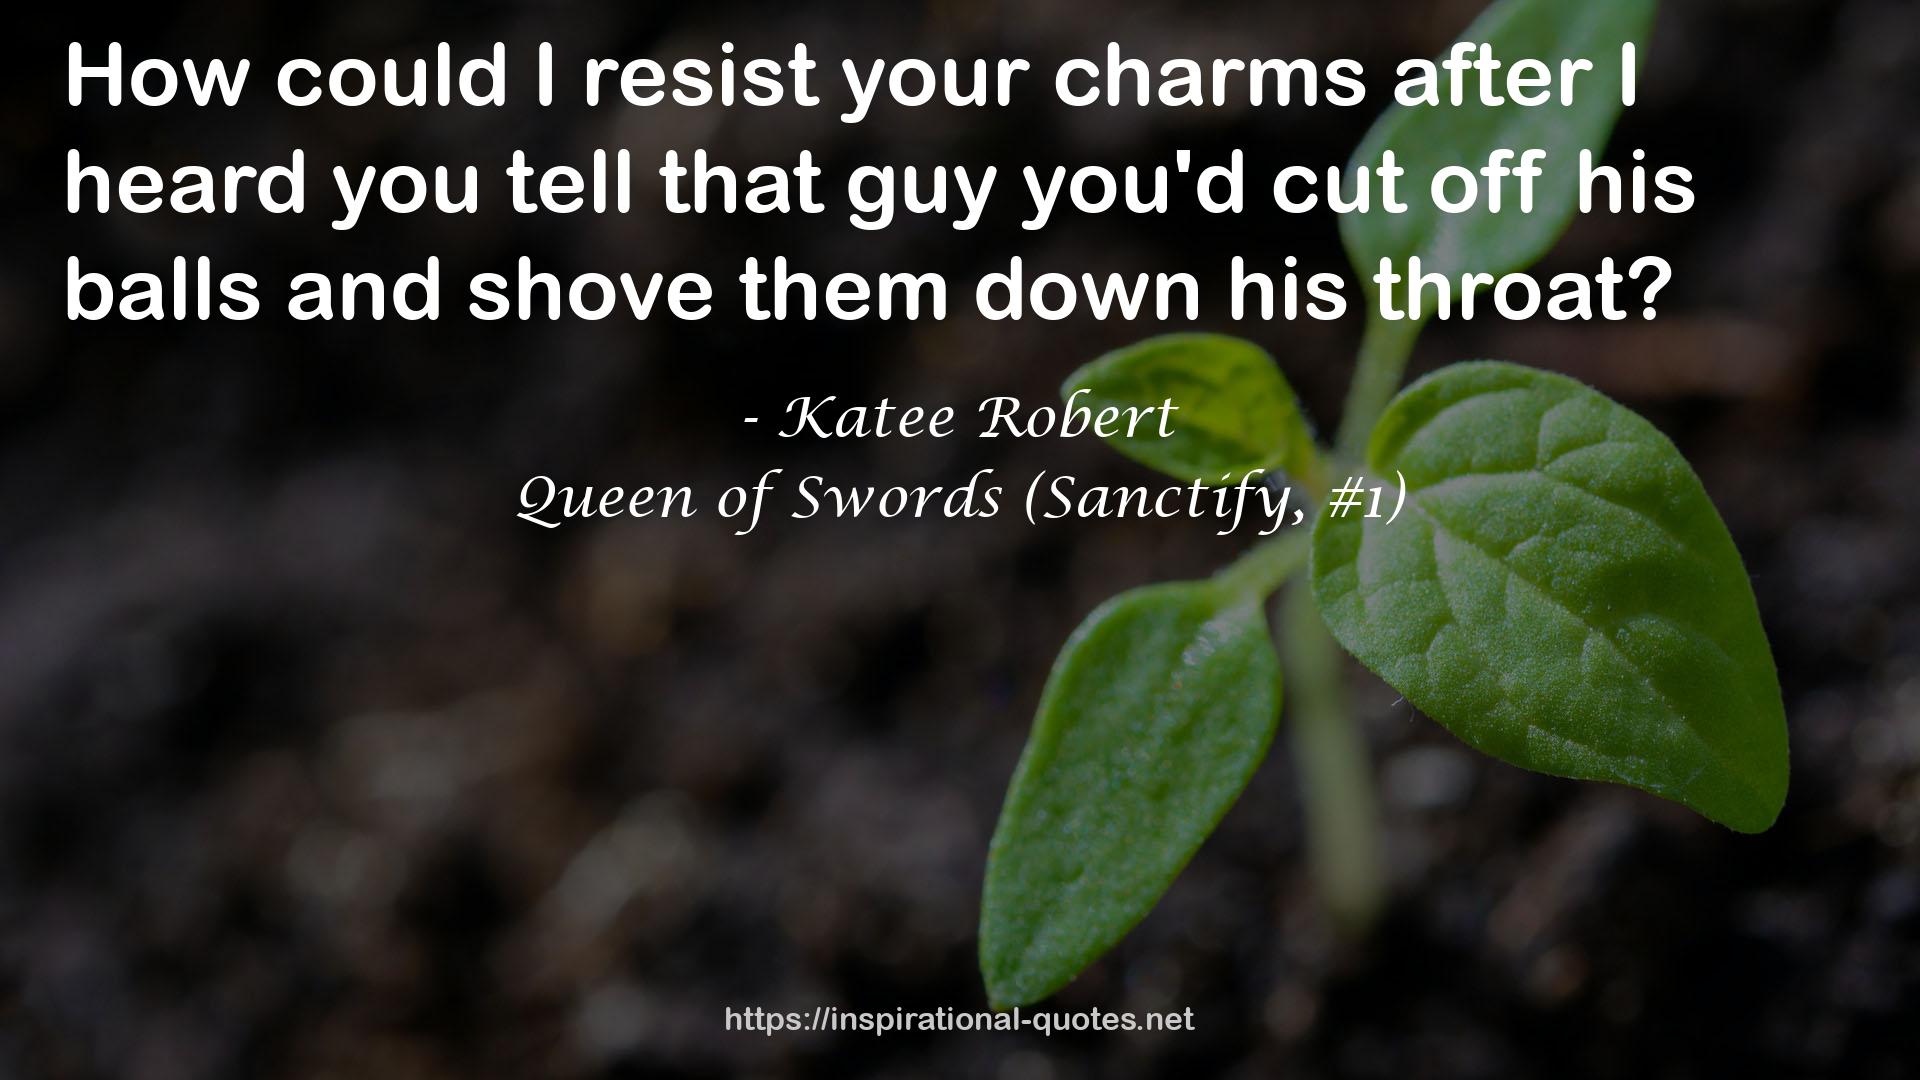 Queen of Swords (Sanctify, #1) QUOTES